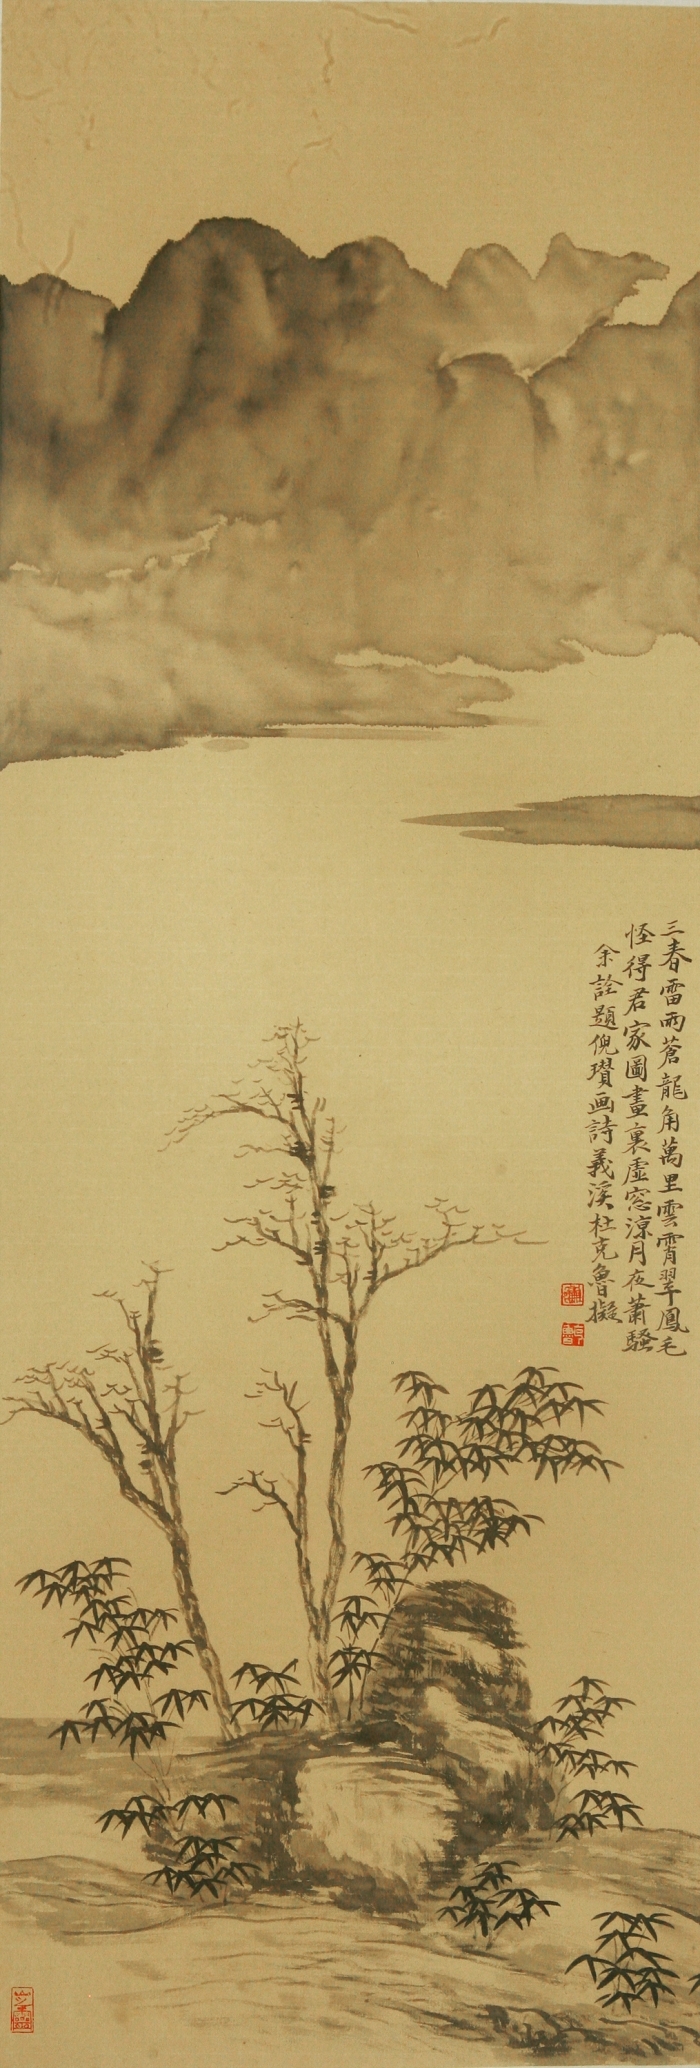 La galerie Fenghetang Art Chinois - L'utilisation actuelle de l'ancienneté 3